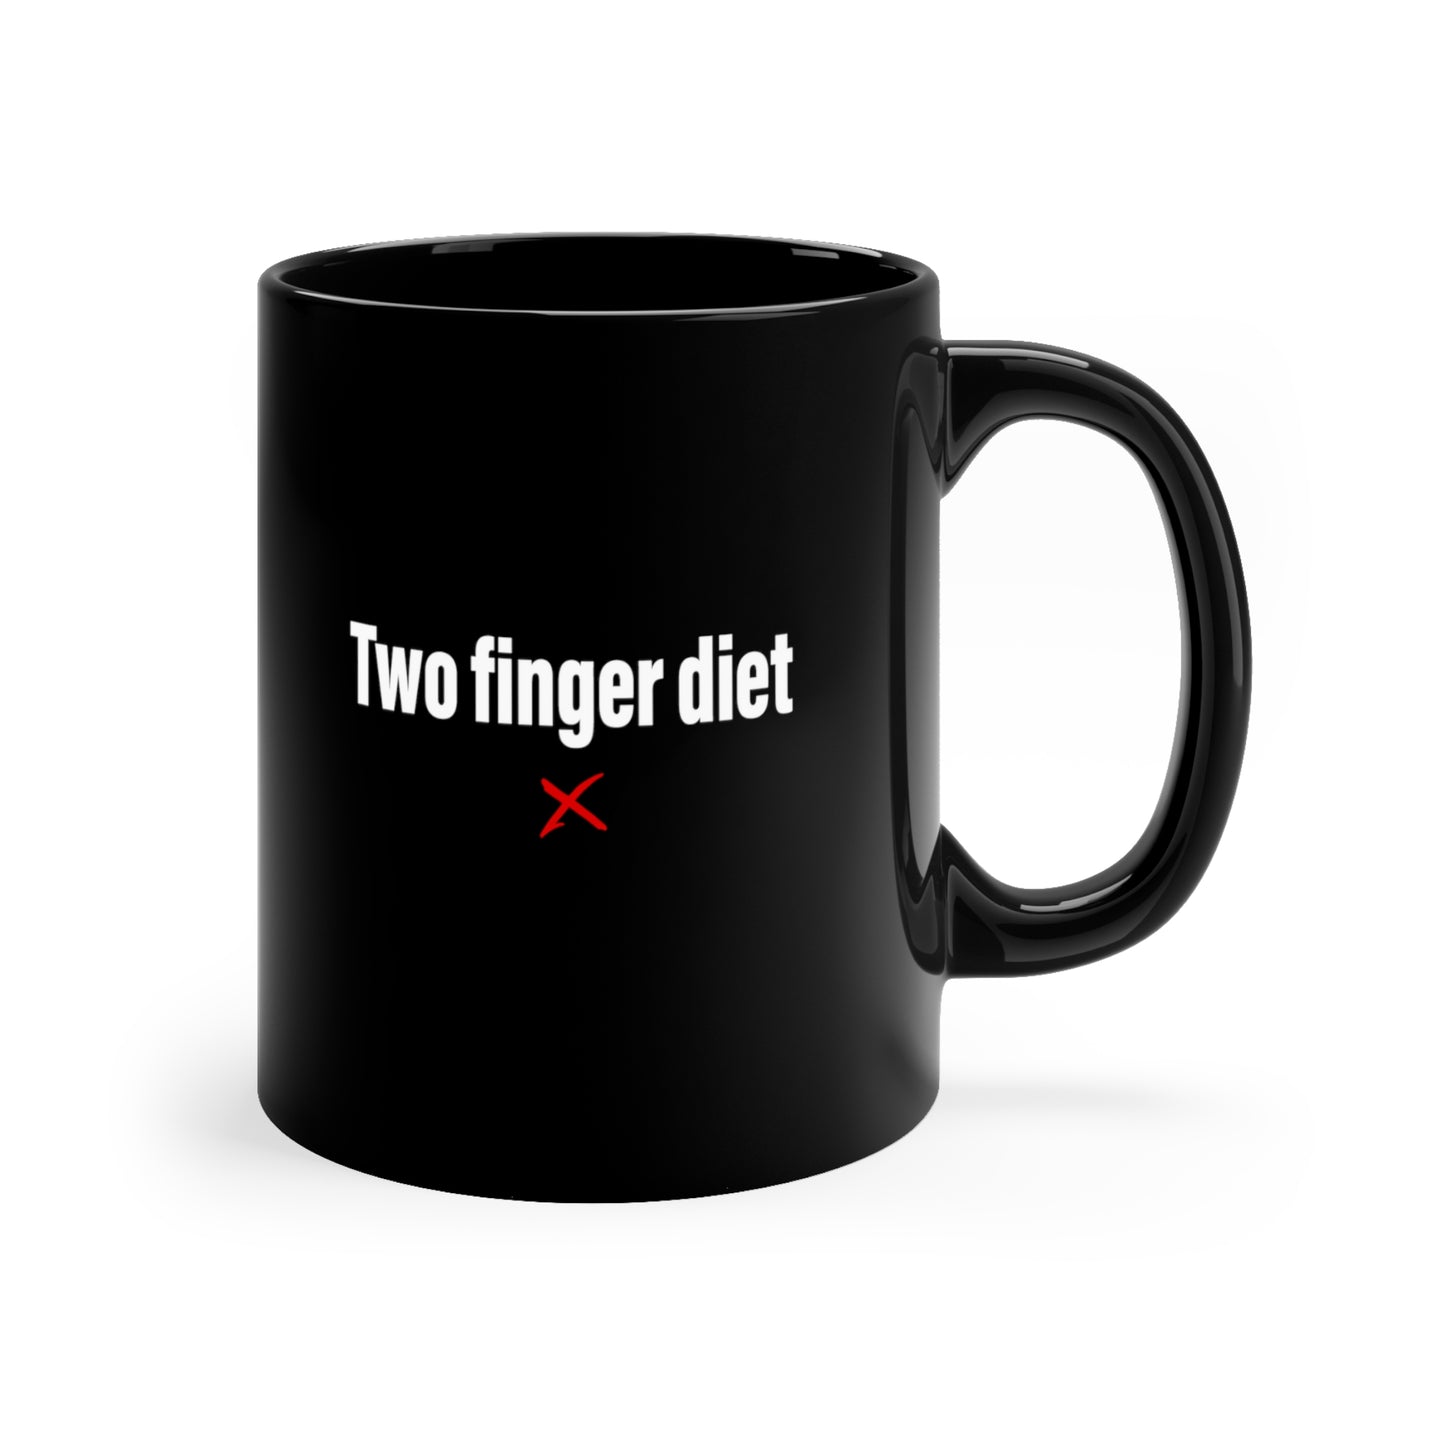 Two finger diet - Mug